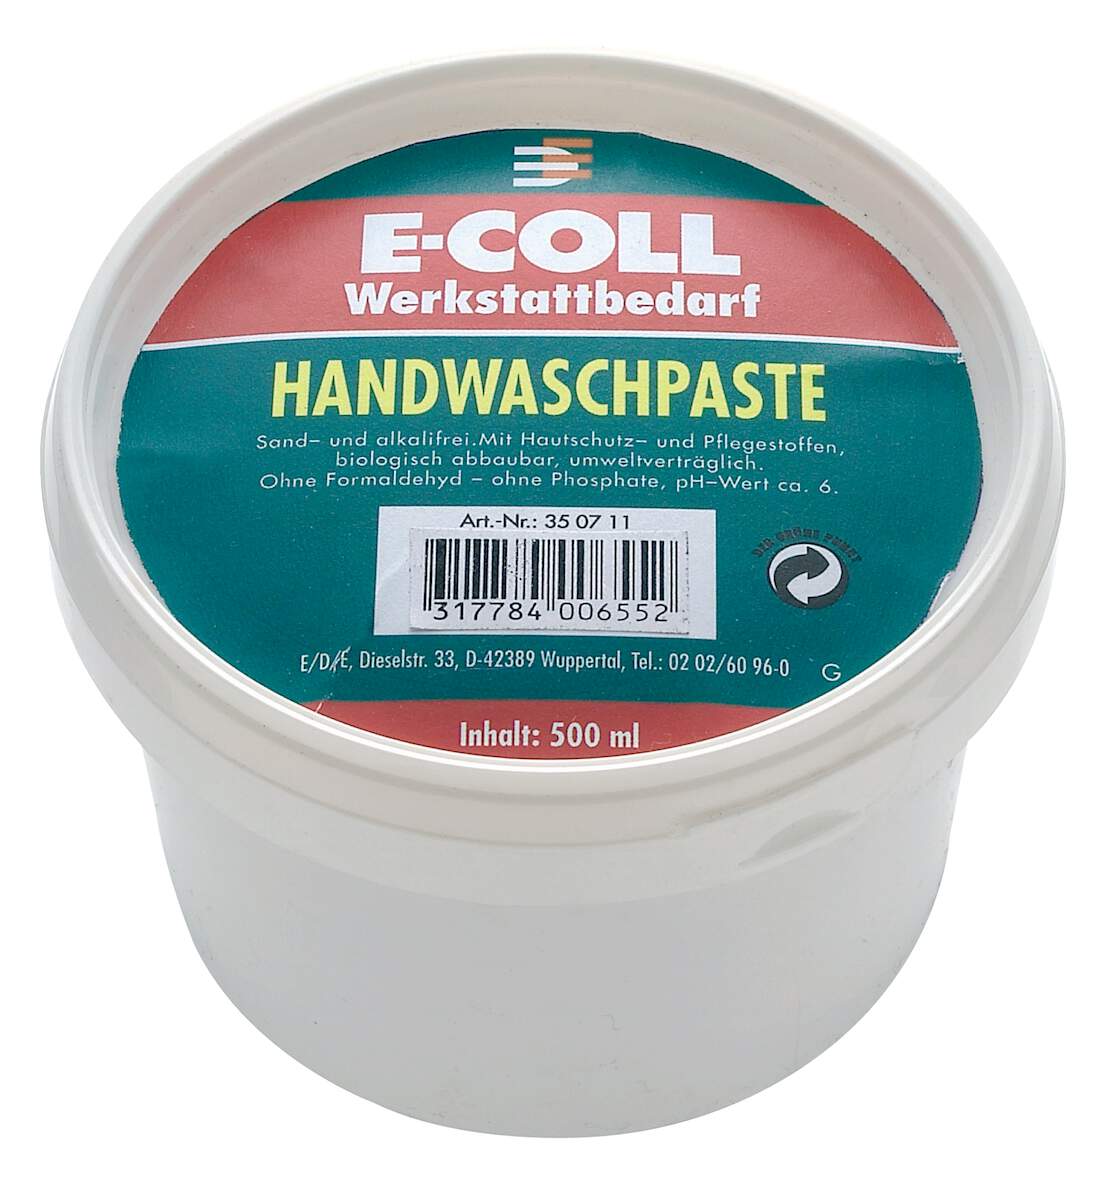 1021764 - Handwaschpaste